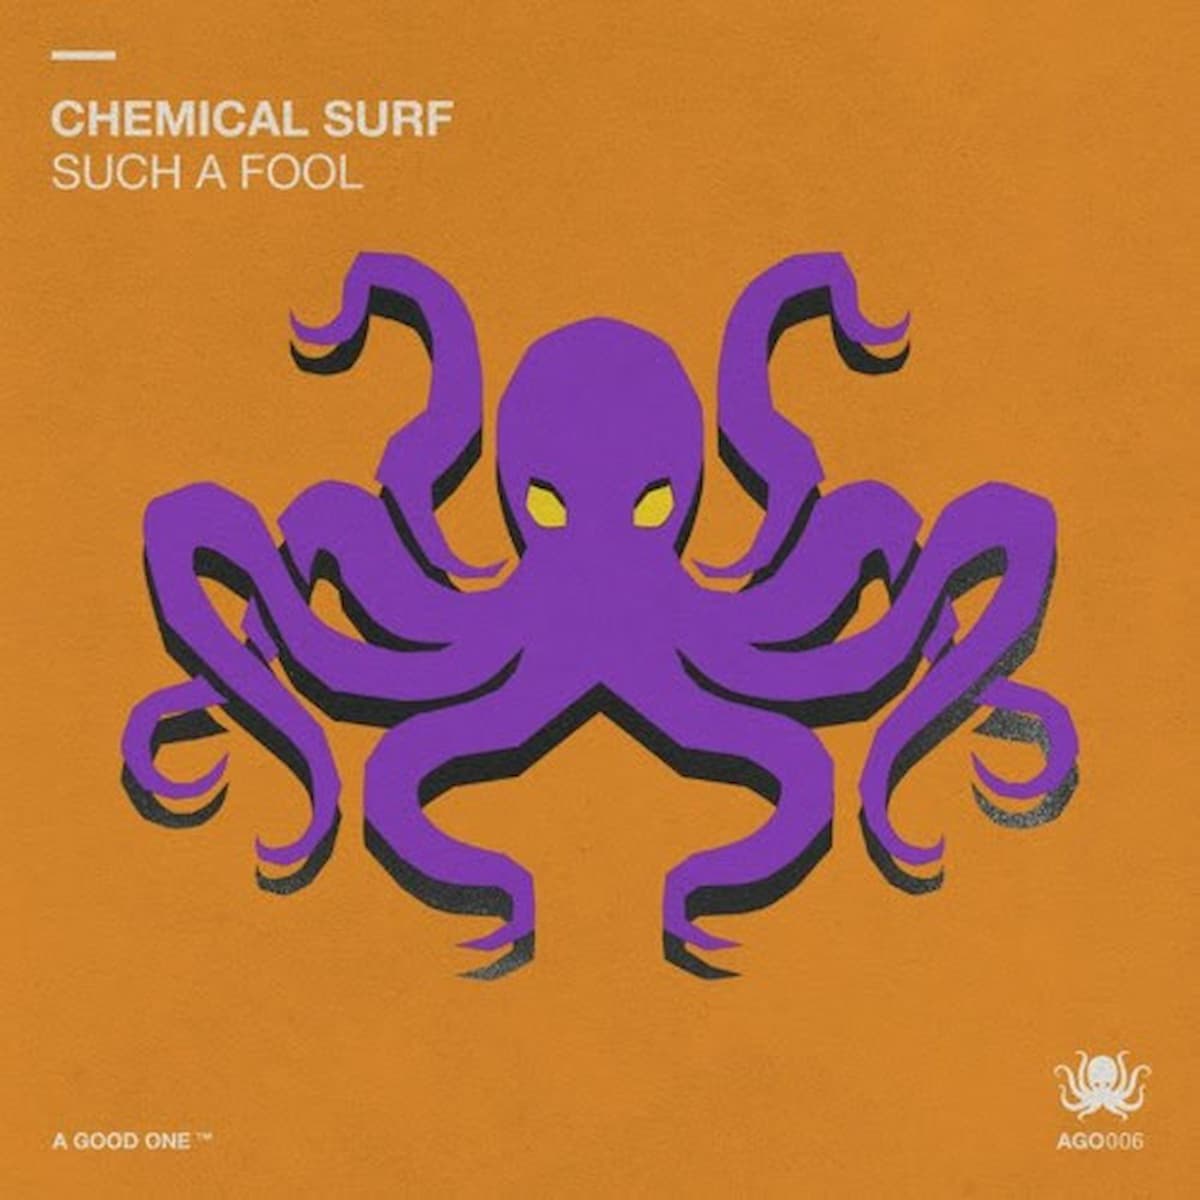 Chemical Surf estreia na nova label de Steve Aoki com "Such a Fool"